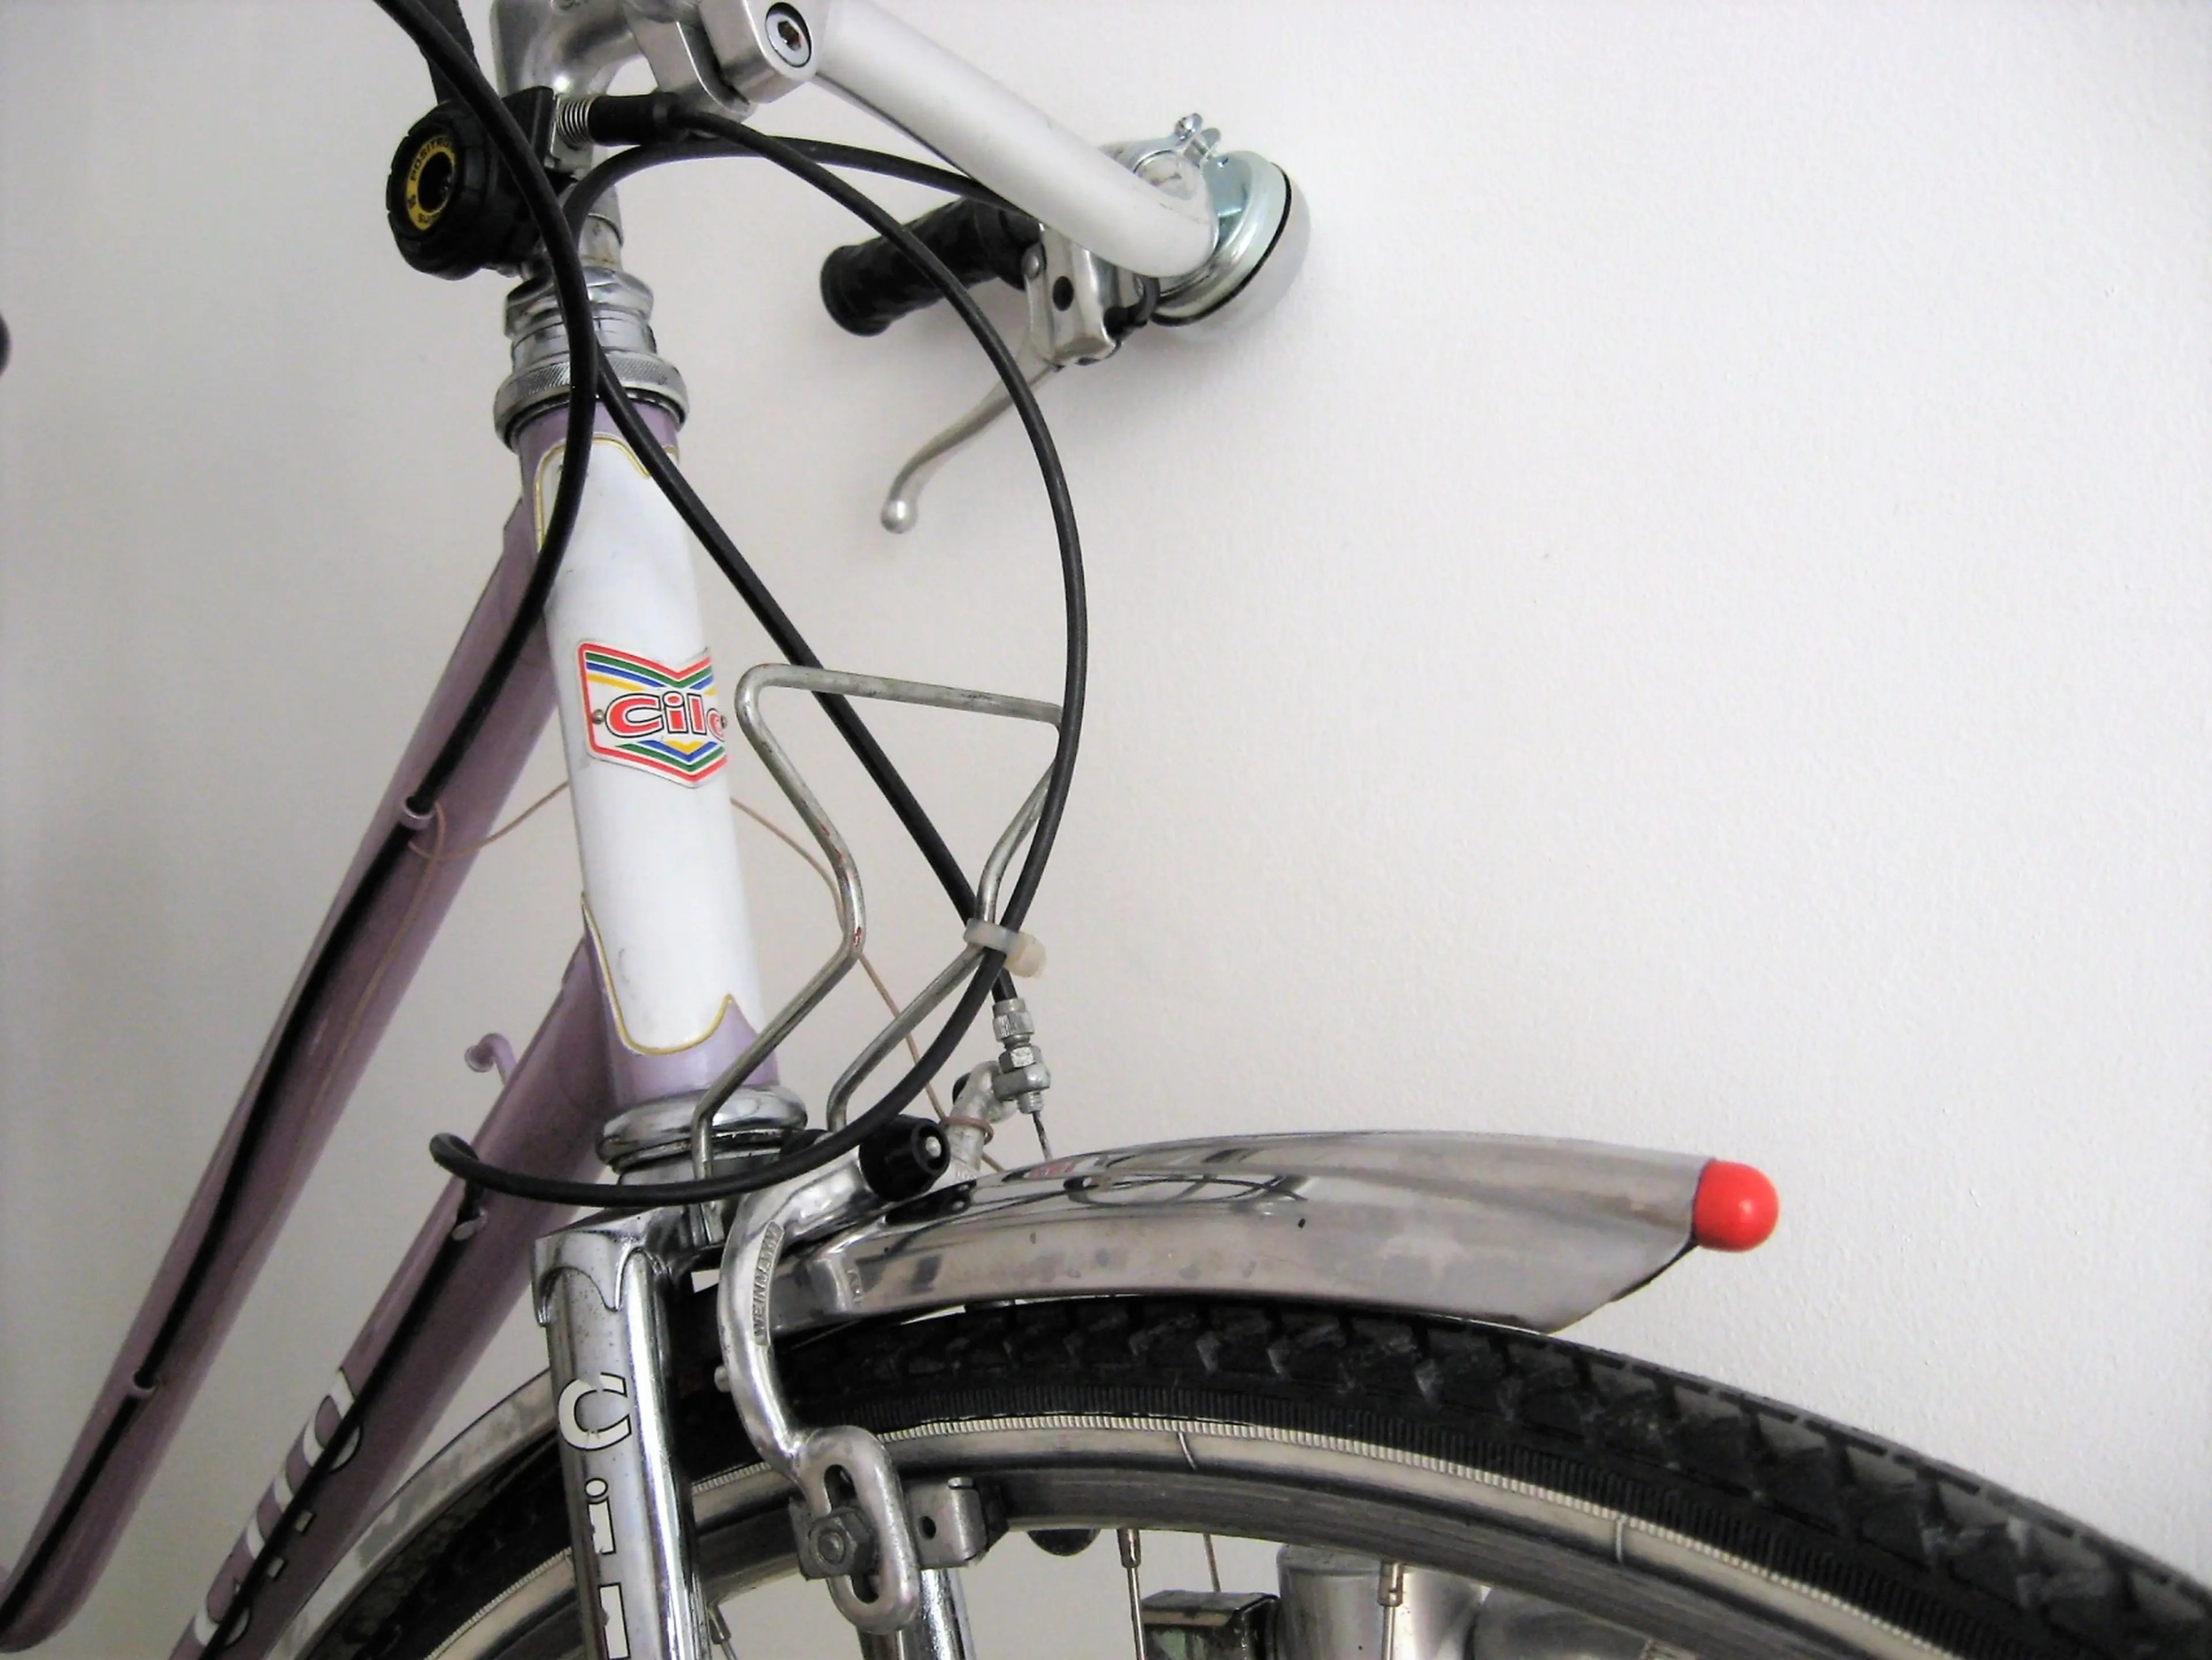 5. Bicicleta cursiera de dama CILO